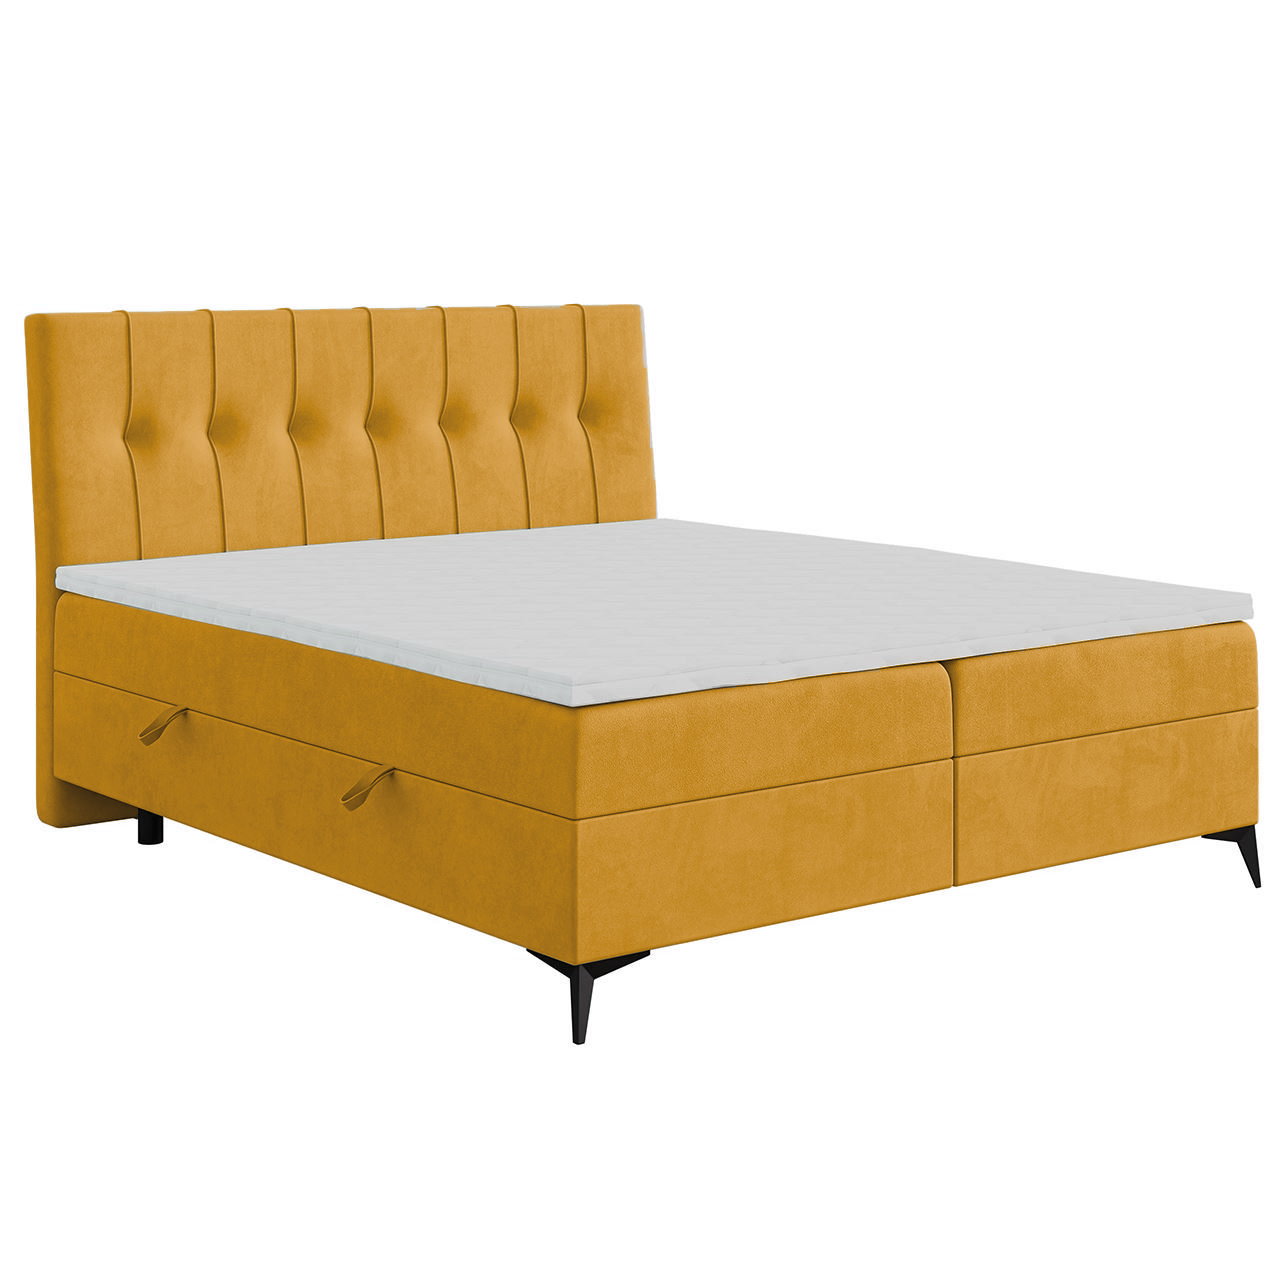 Upholstered bed LIME 140x200 magic velvet 2215